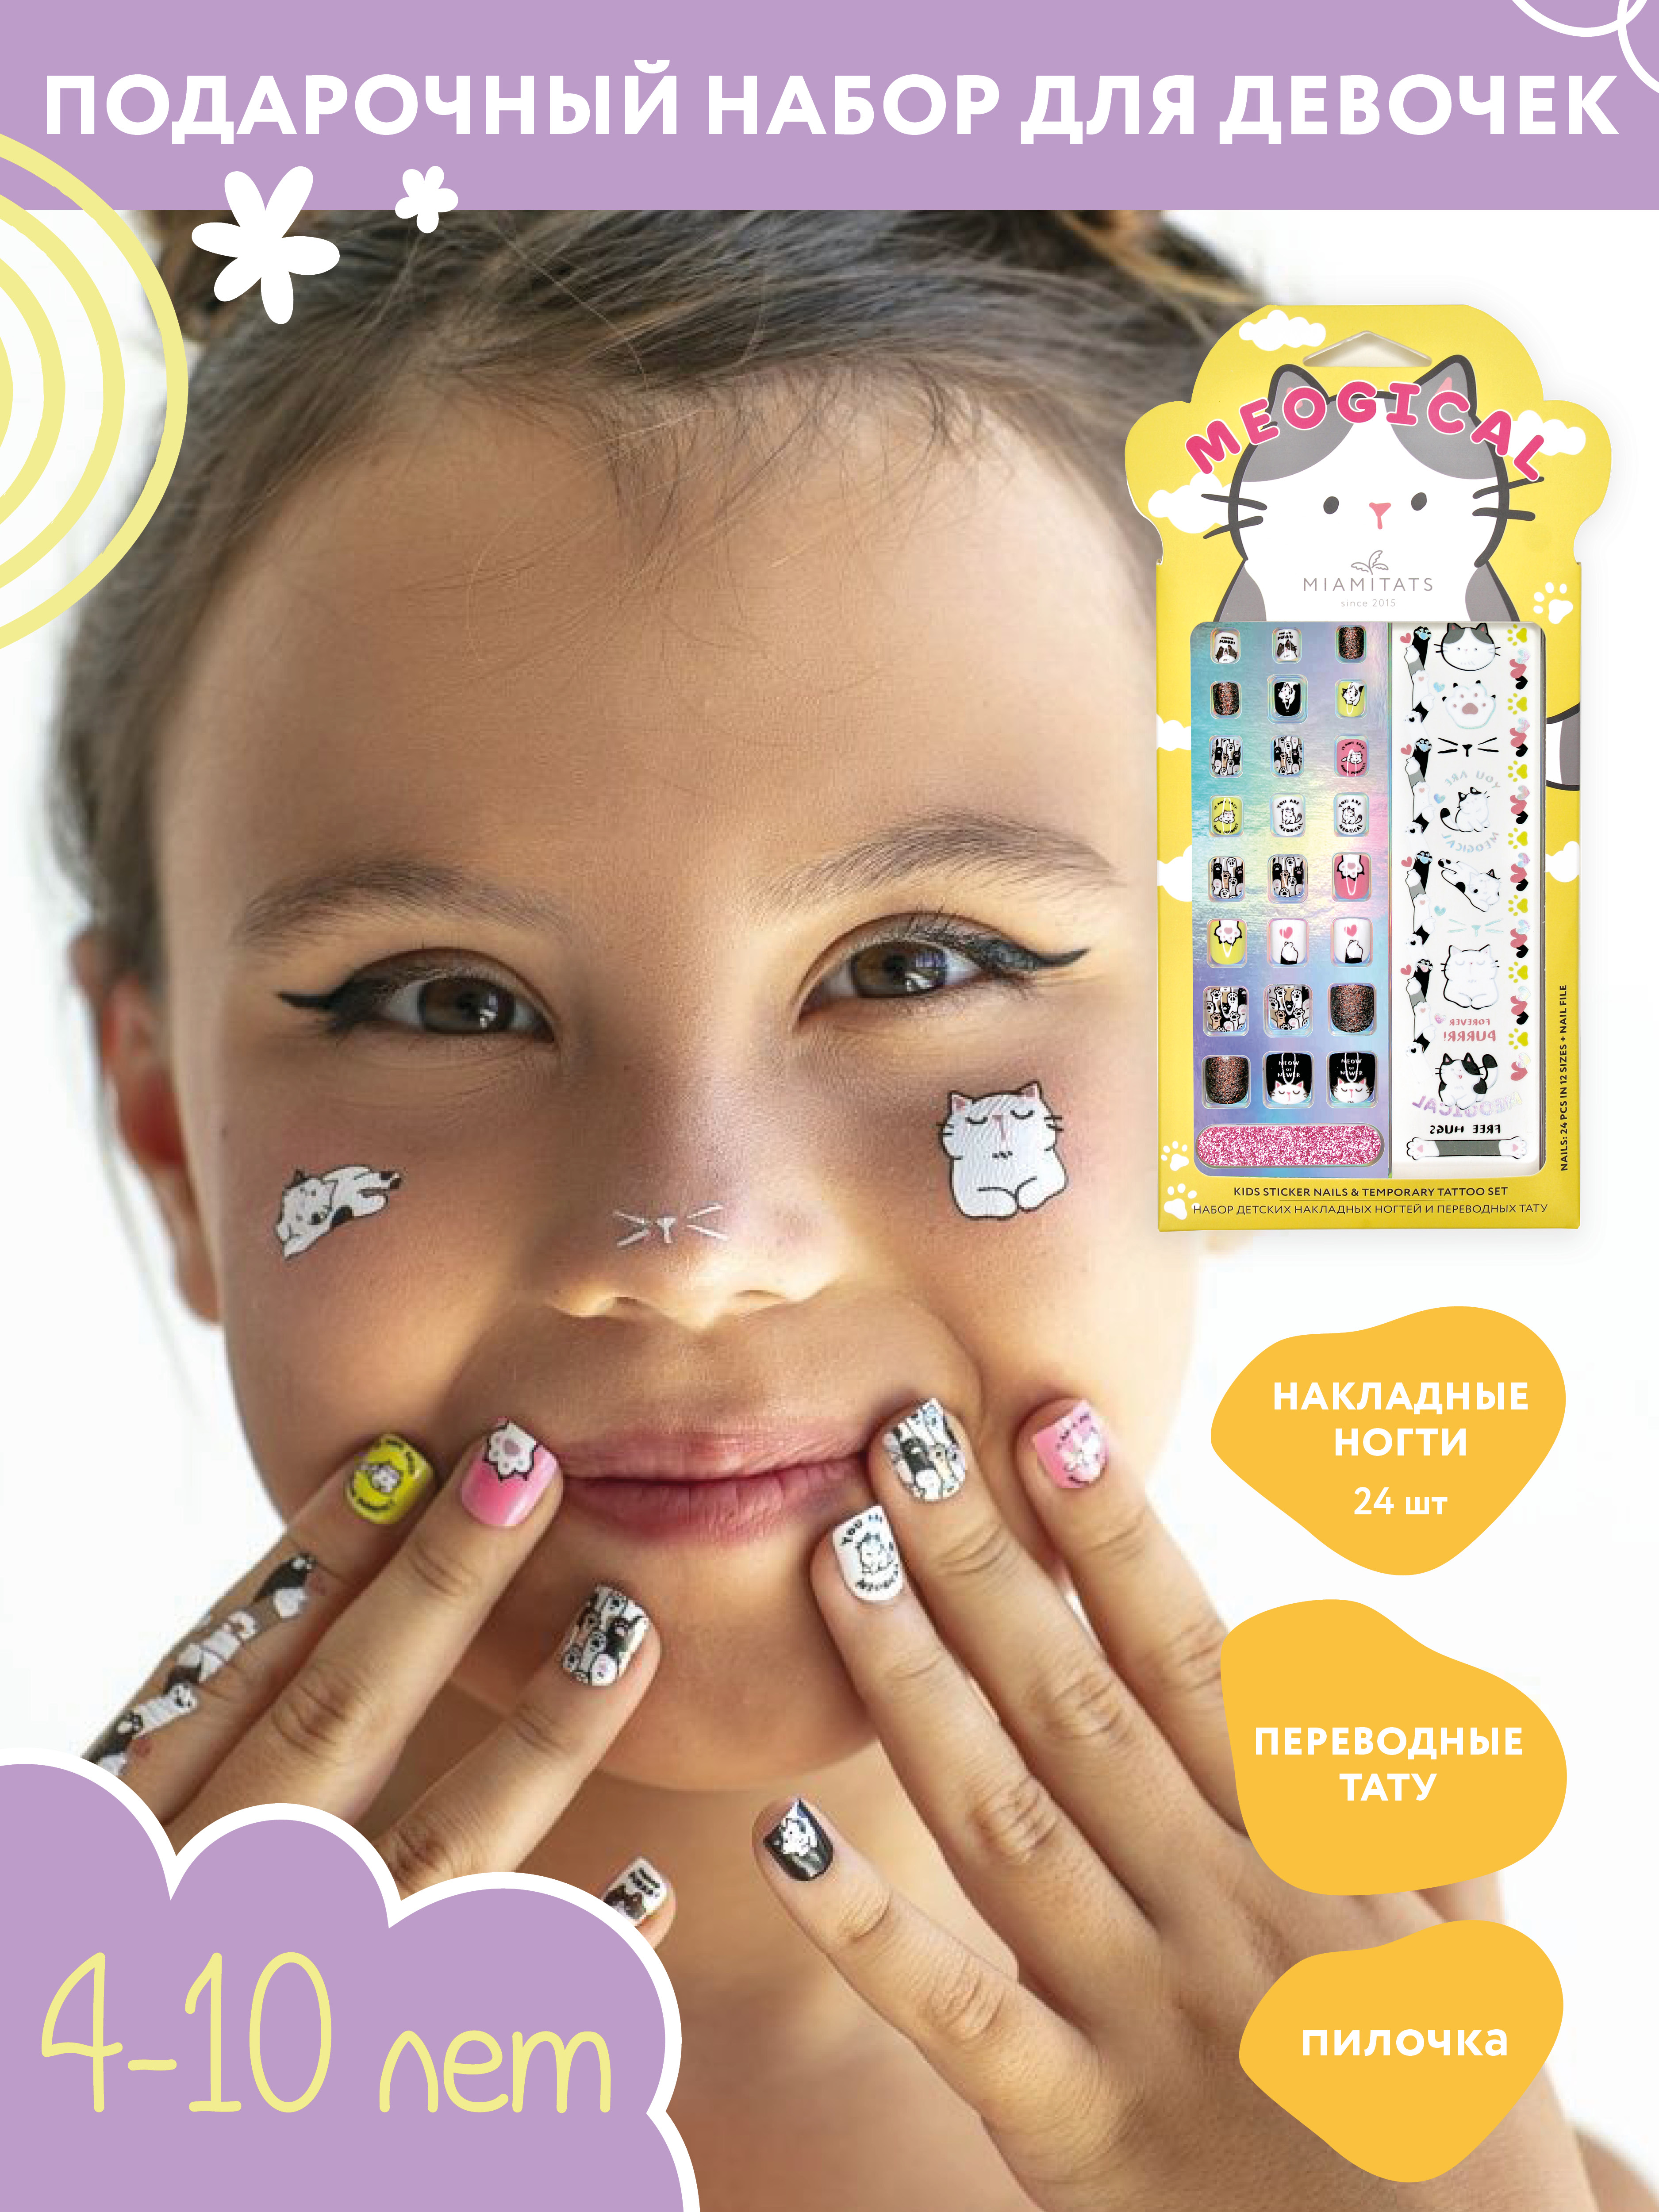 Набор Miamitats Meogical детские накладные ногти и переводные татуировки, 1 шт.